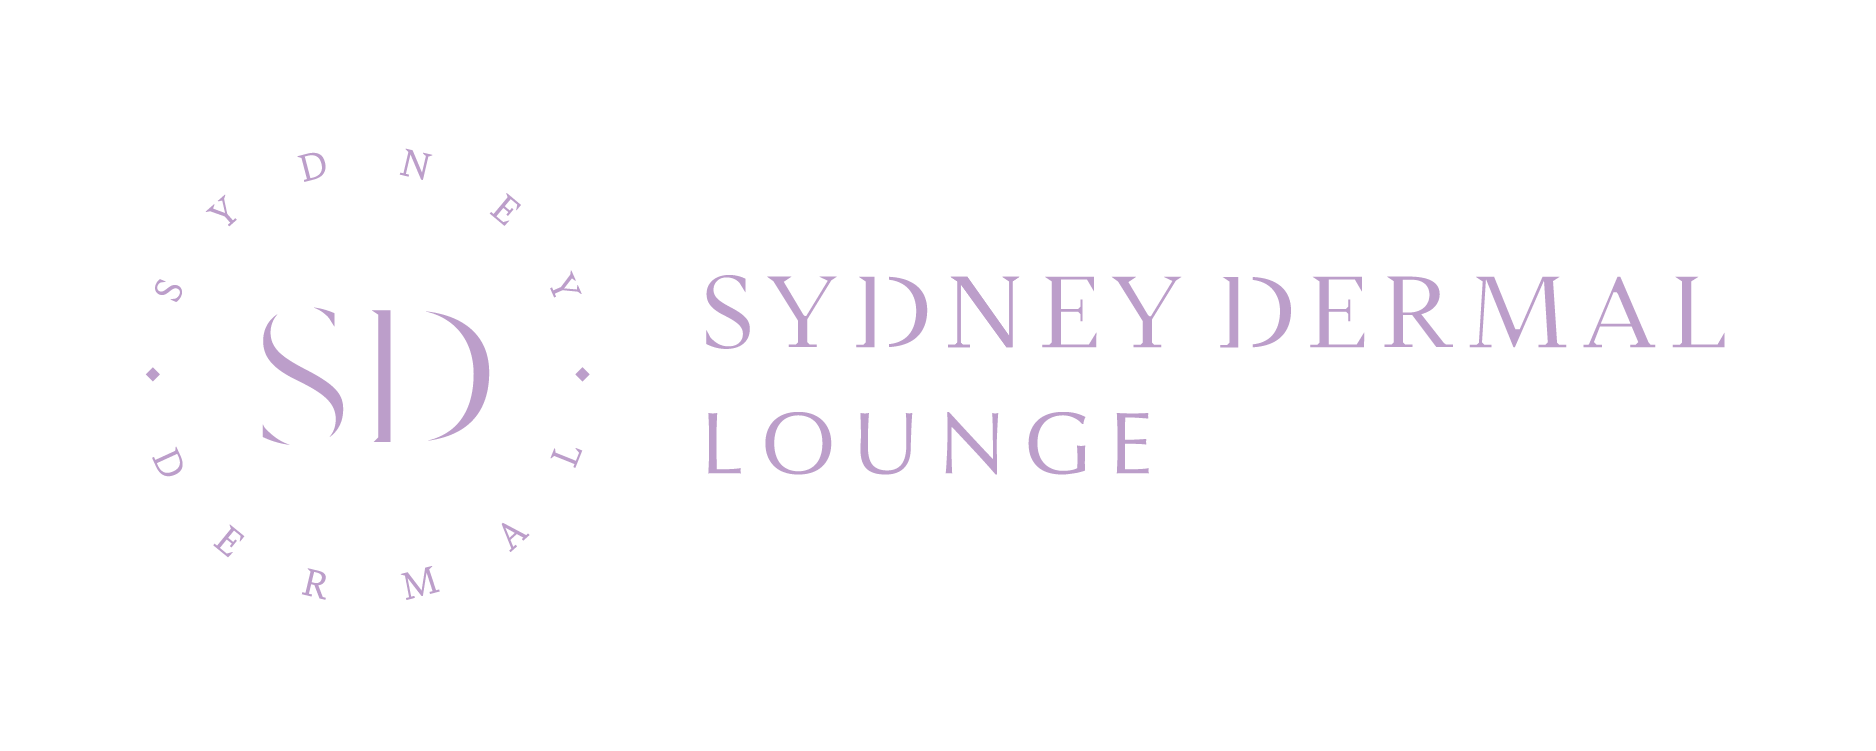 Sydney Dermal Lounge